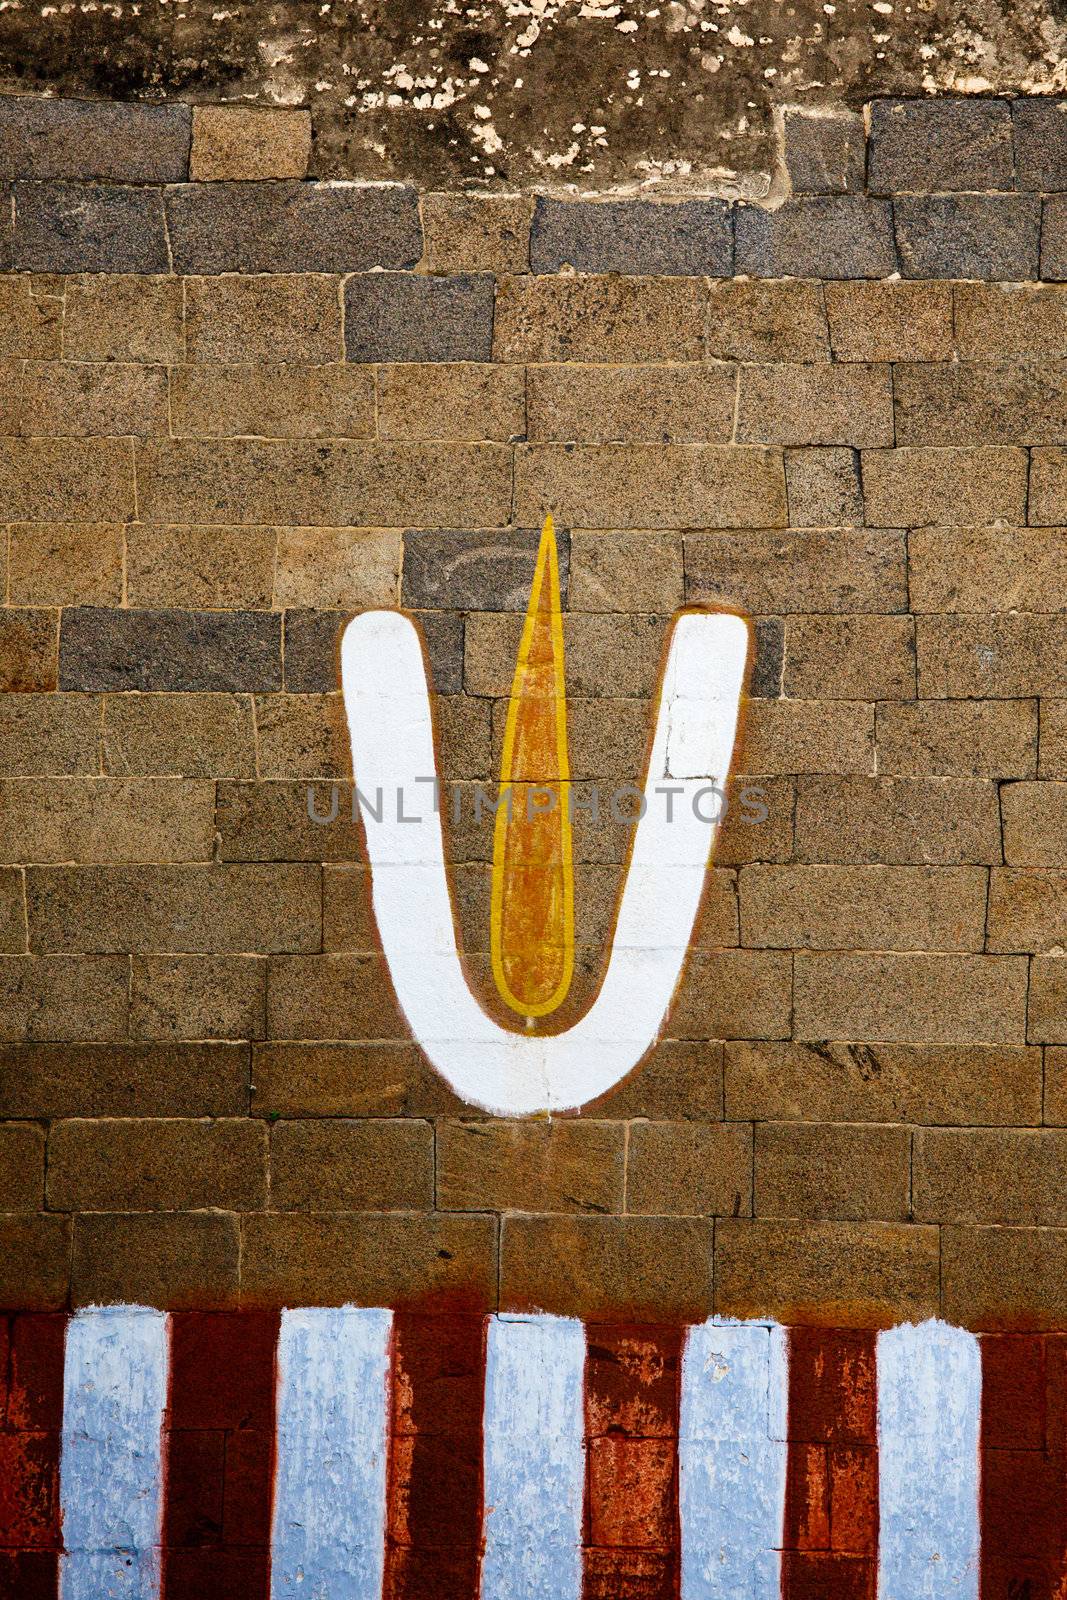 Vishnu symbol on wall by dimol